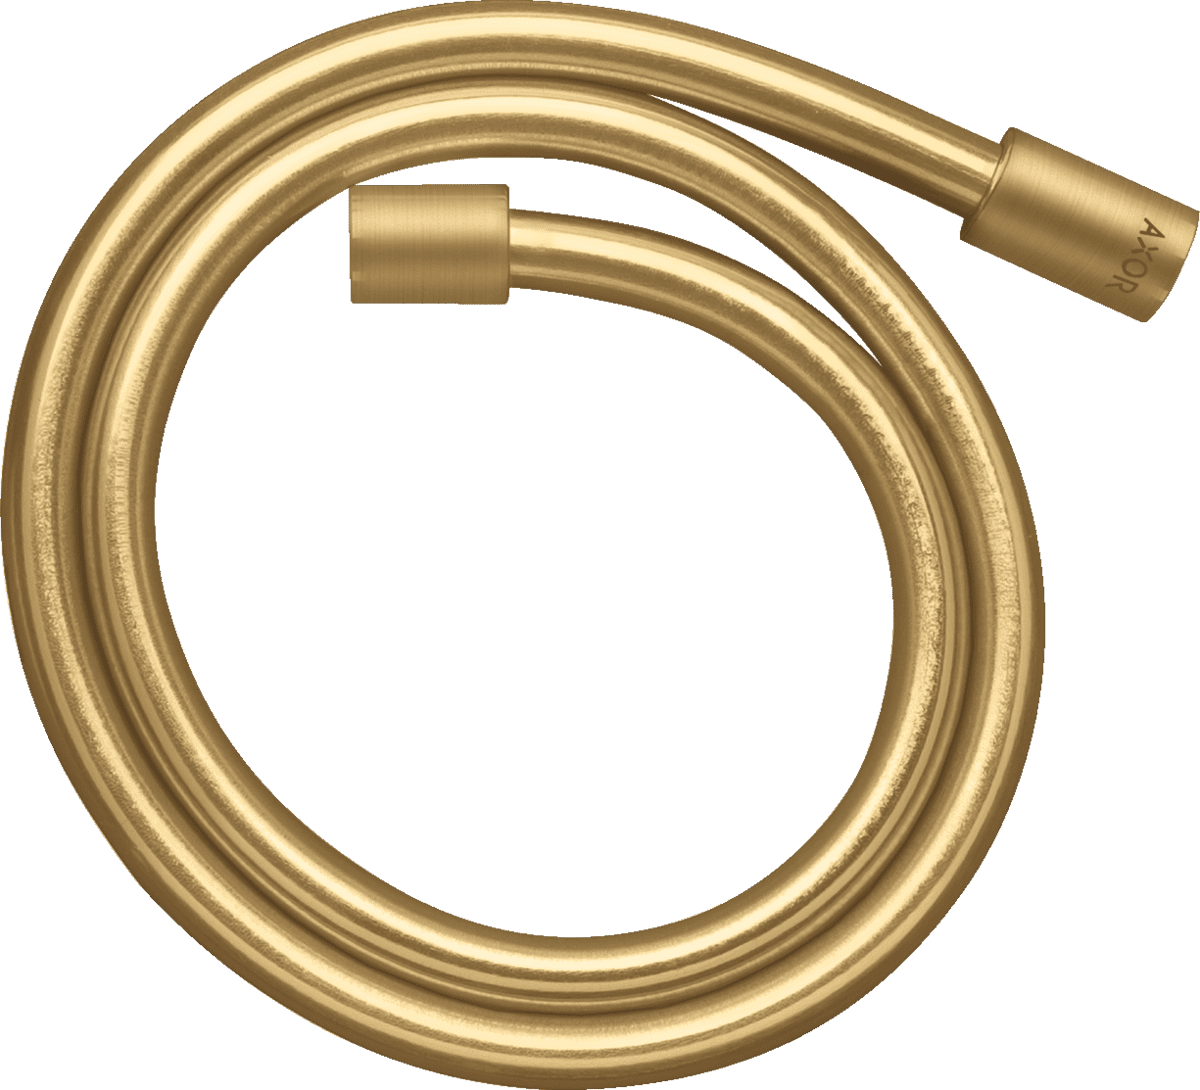 εικόνα του HANSGROHE AXOR Starck Metal effect shower hose 1.25 m with cylindrical nuts #28282250 - Brushed Gold Optic